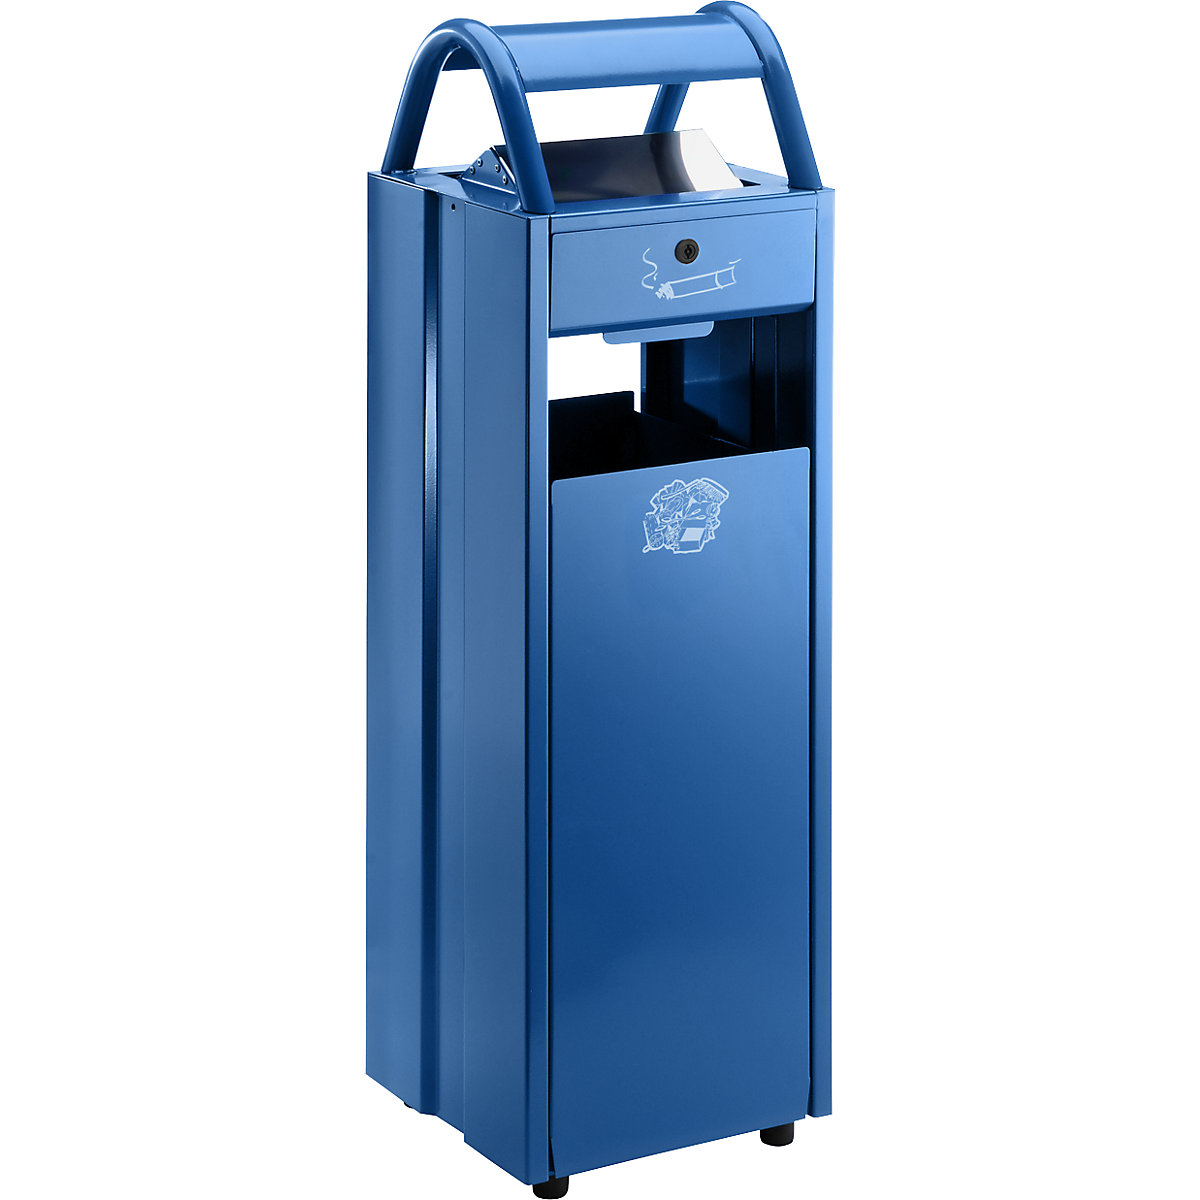 Colector de residuos con cenicero y tejadillo protector contra la lluvia – VAR, capacidad 35 l, A x H x P 300 x 960 x 250 mm, azul genciana RAL 5010